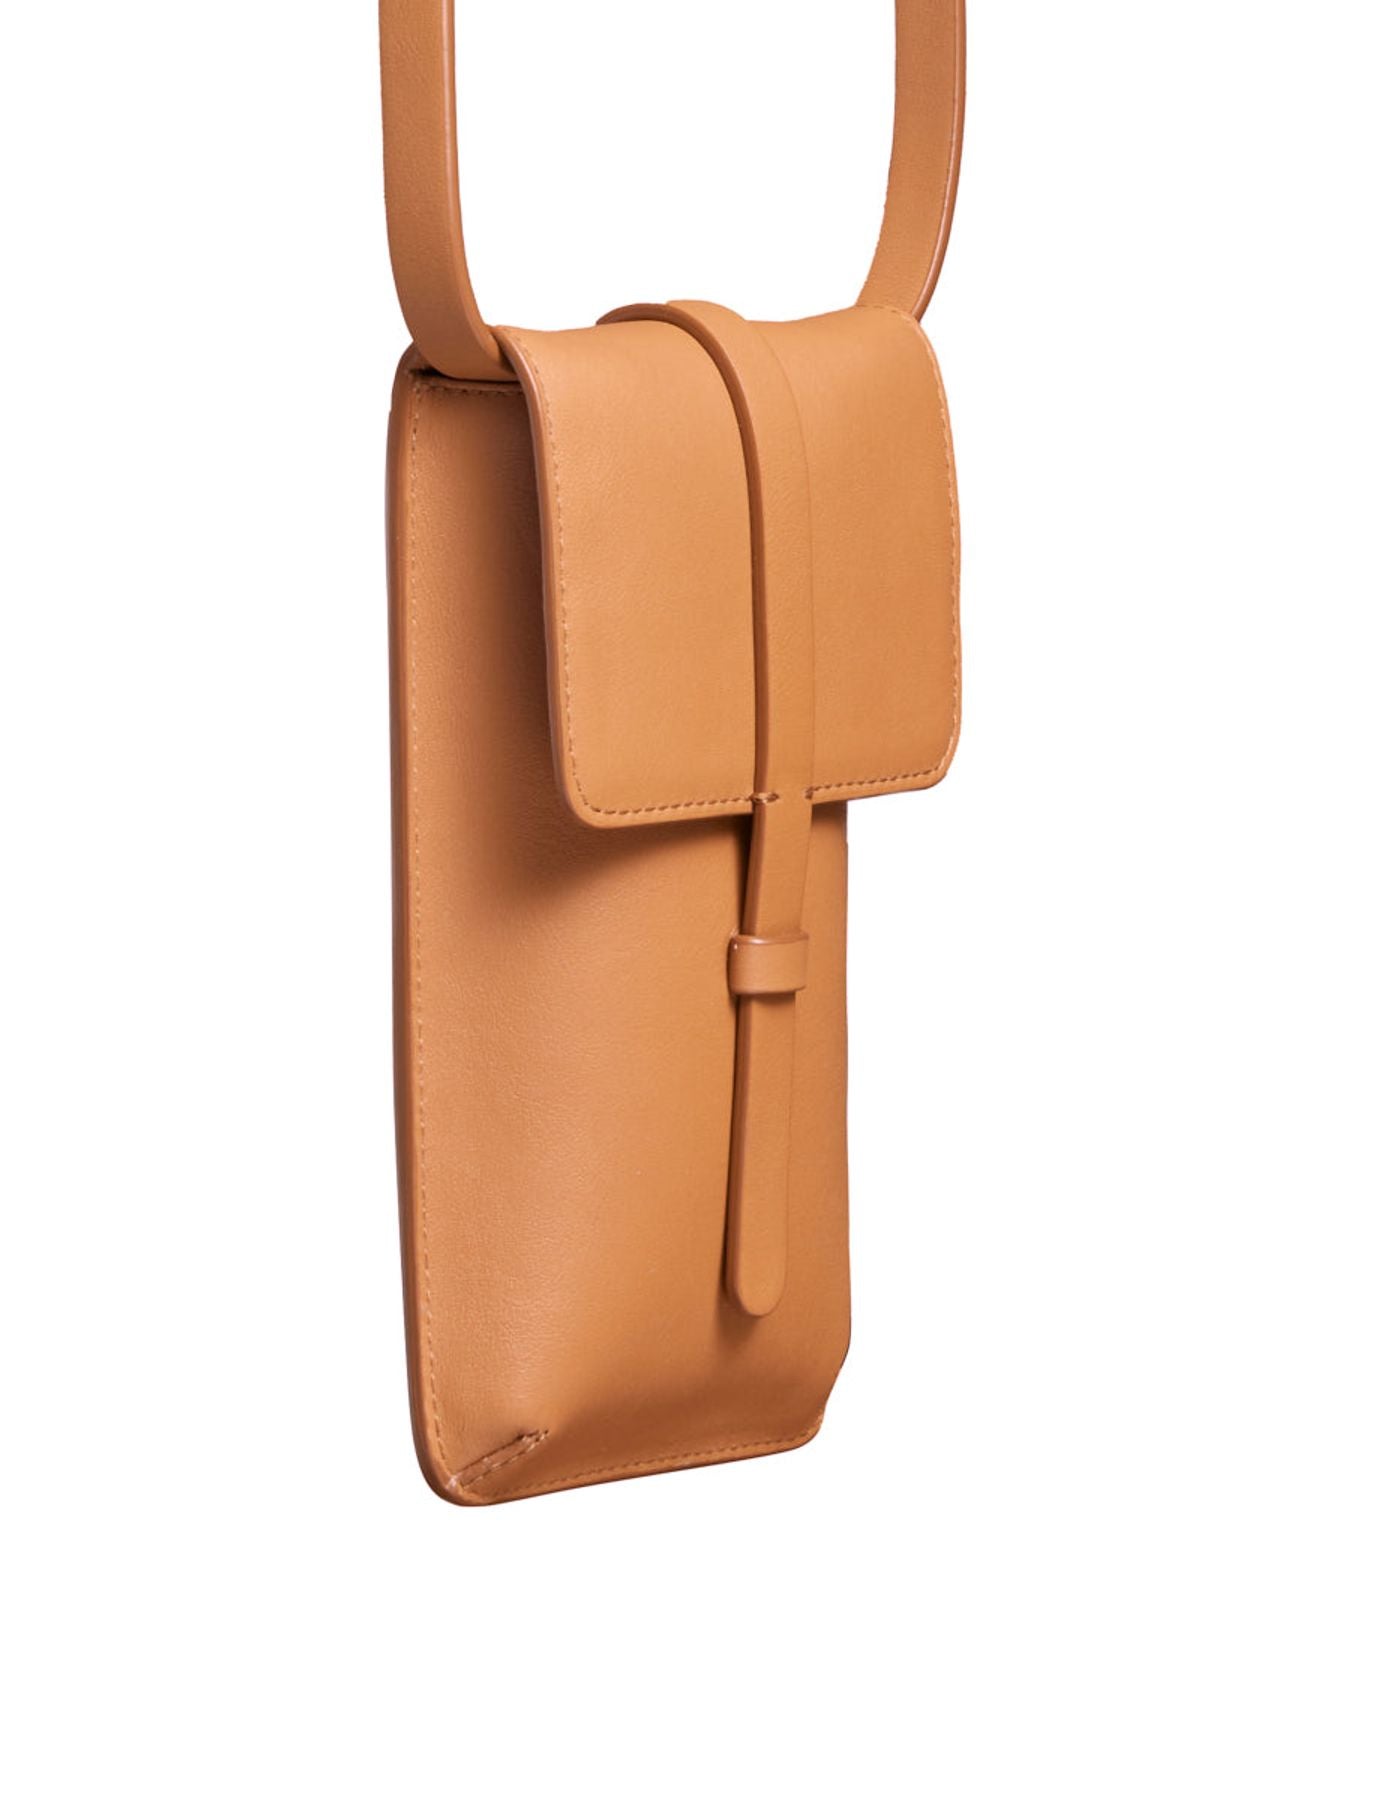 smartphone-bag-leonore-cuir-camel